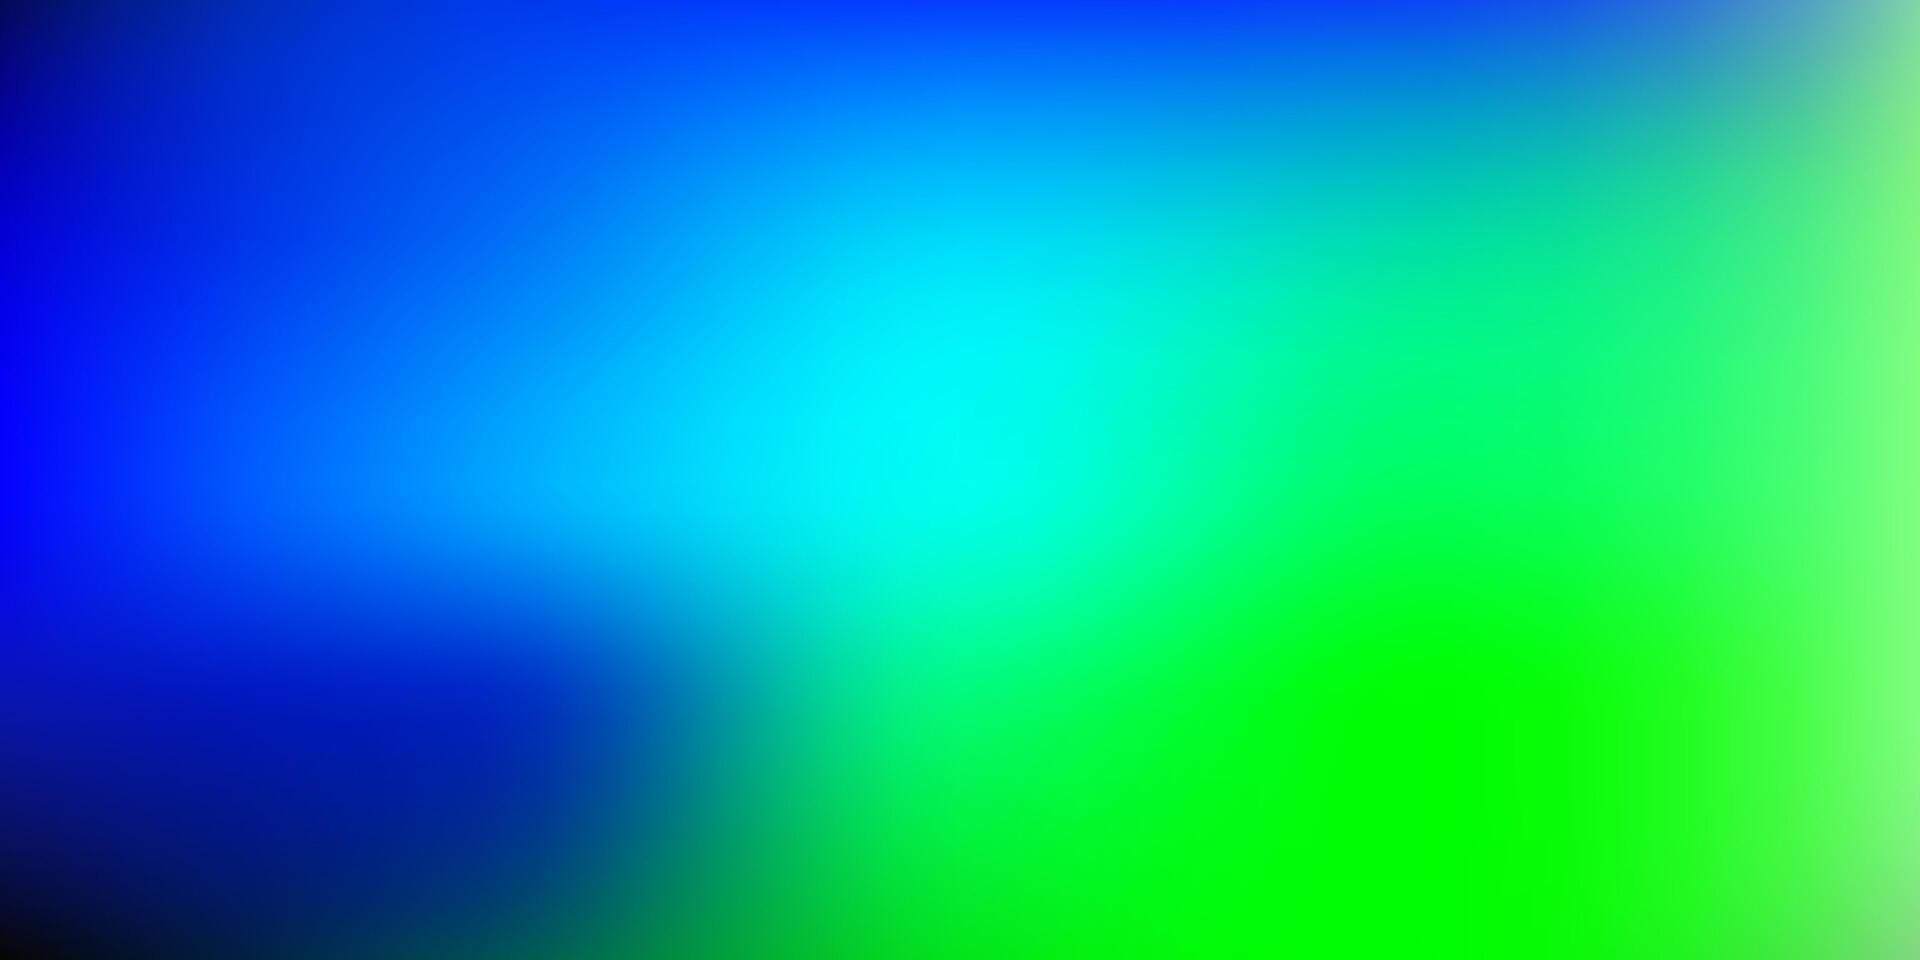 Light blue, green blur texture. vector